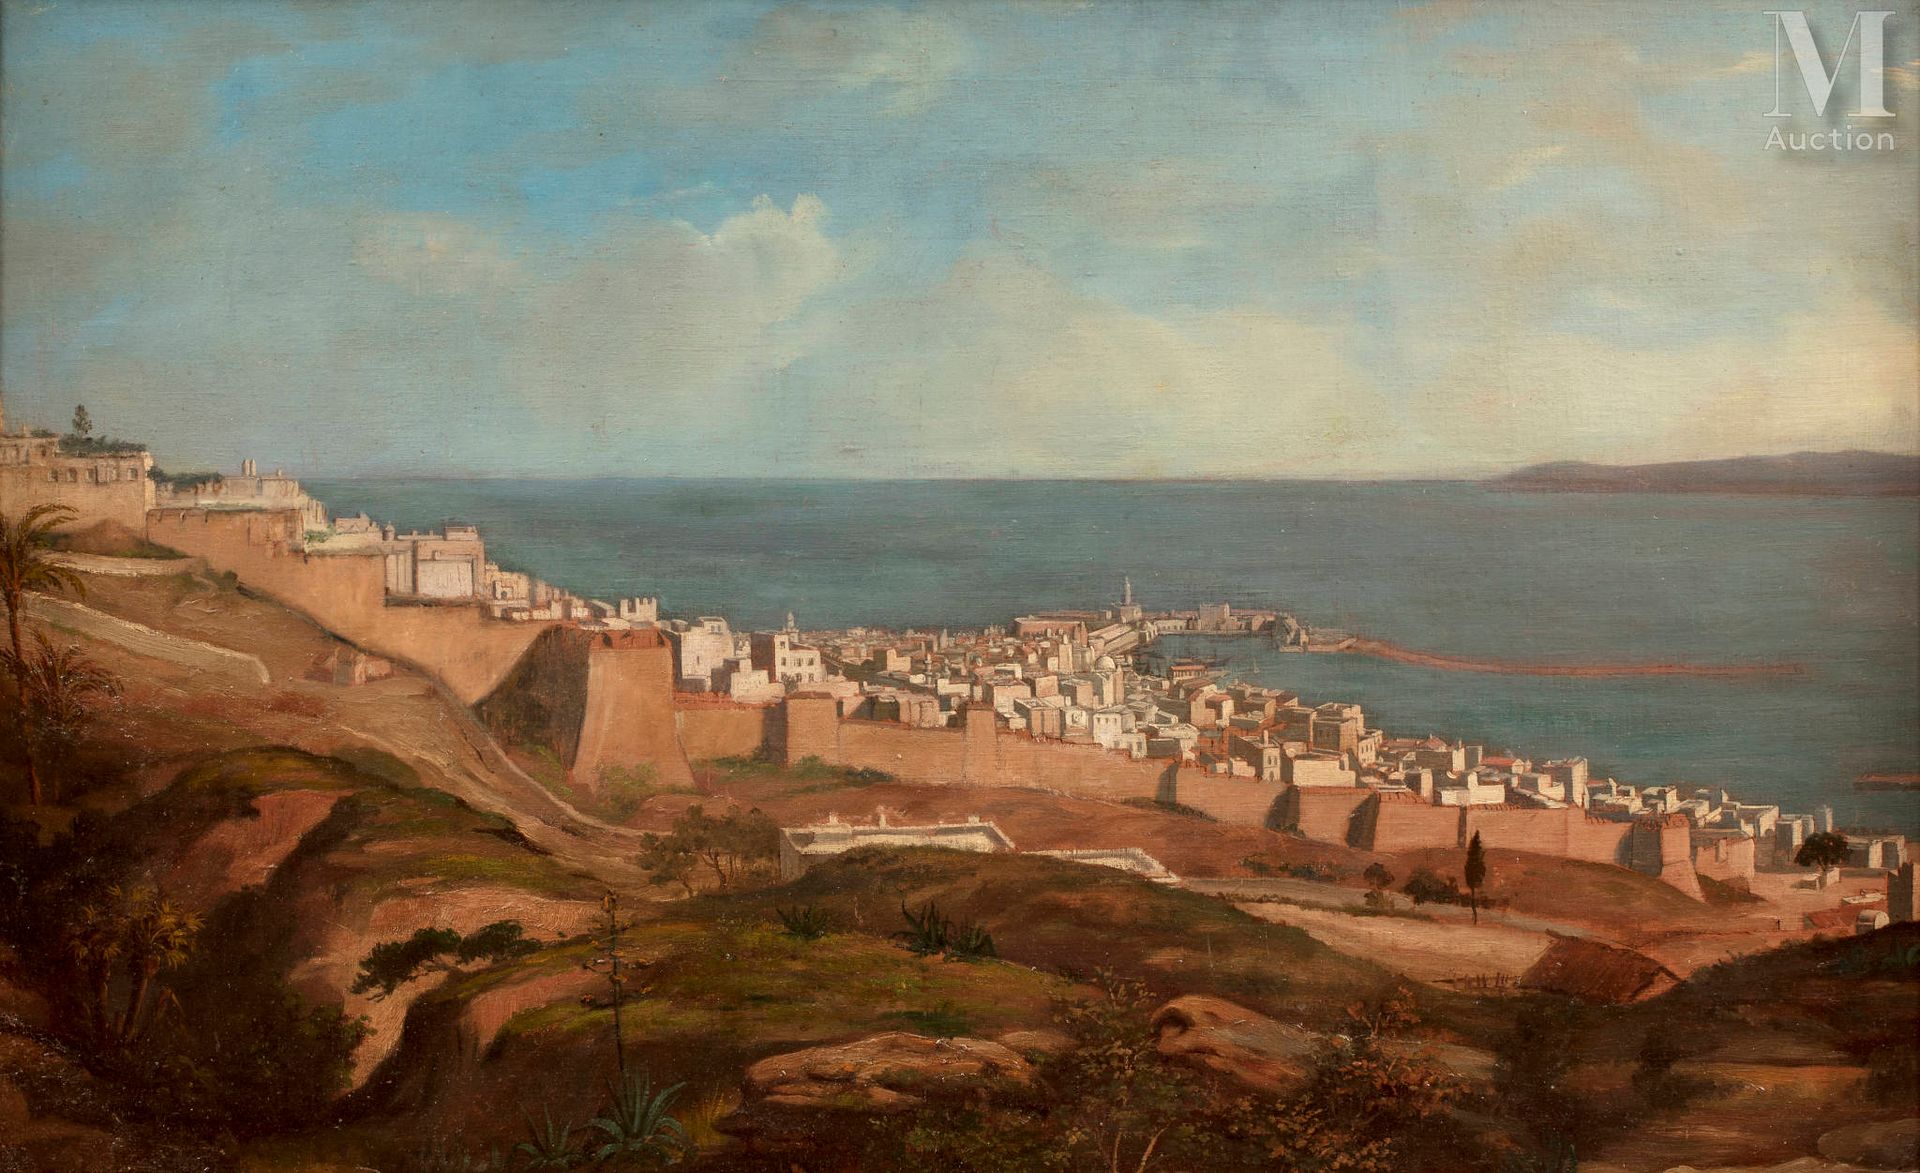 NON VENU - ECOLE FRANCAISE DU XIXème siècle 湾区

原创布面油画

52 x 83 cm